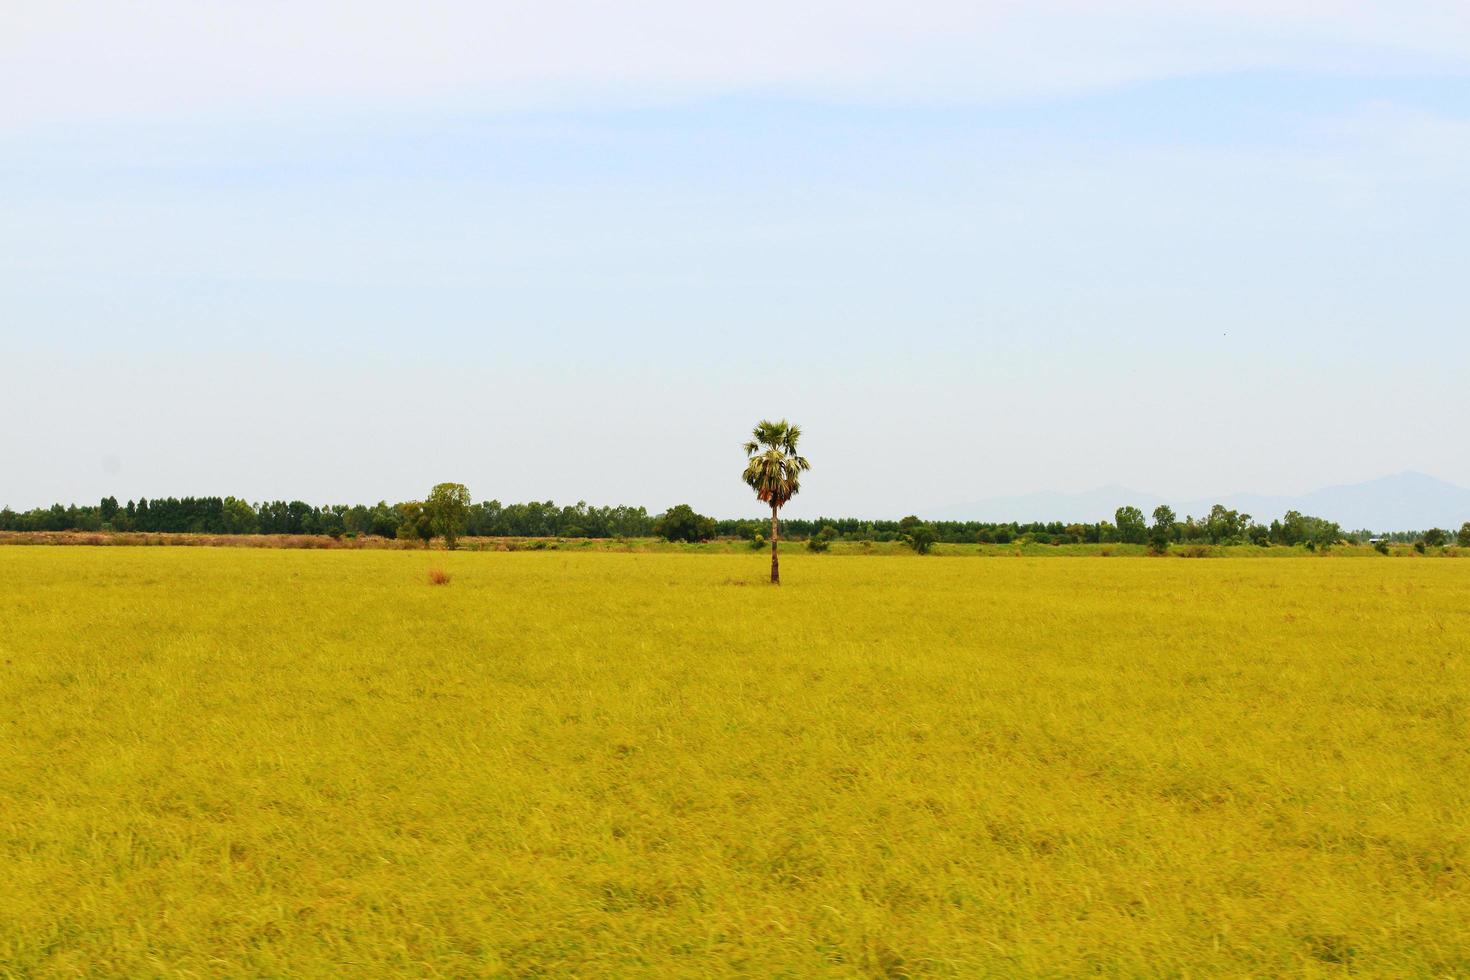 tropicale zucchero palma o toddy palma impianti nel riso campo a Tailandia foto